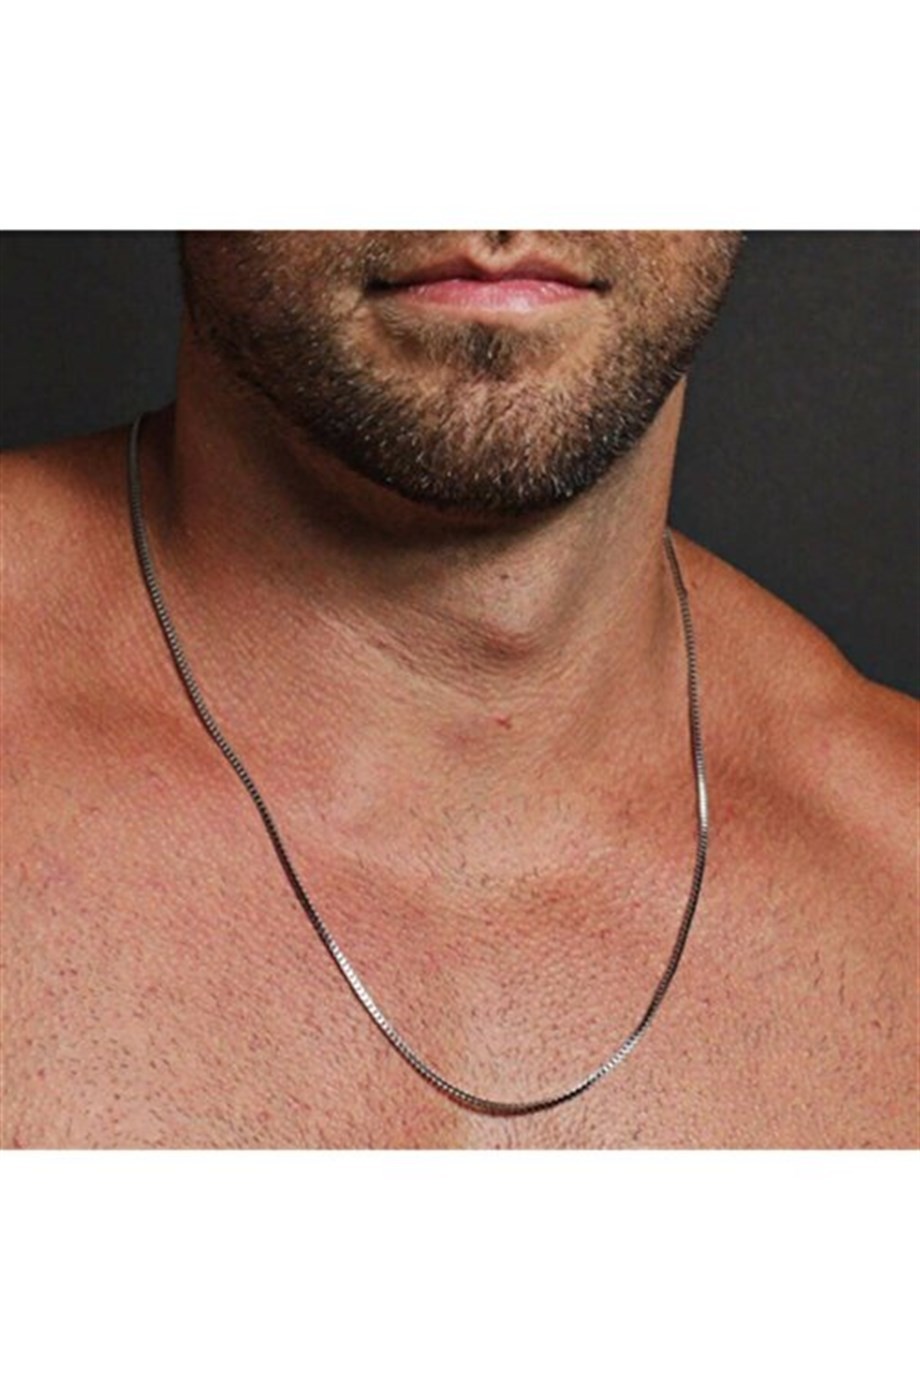 Men's Silver Color Cube Chain Necklace 60cm